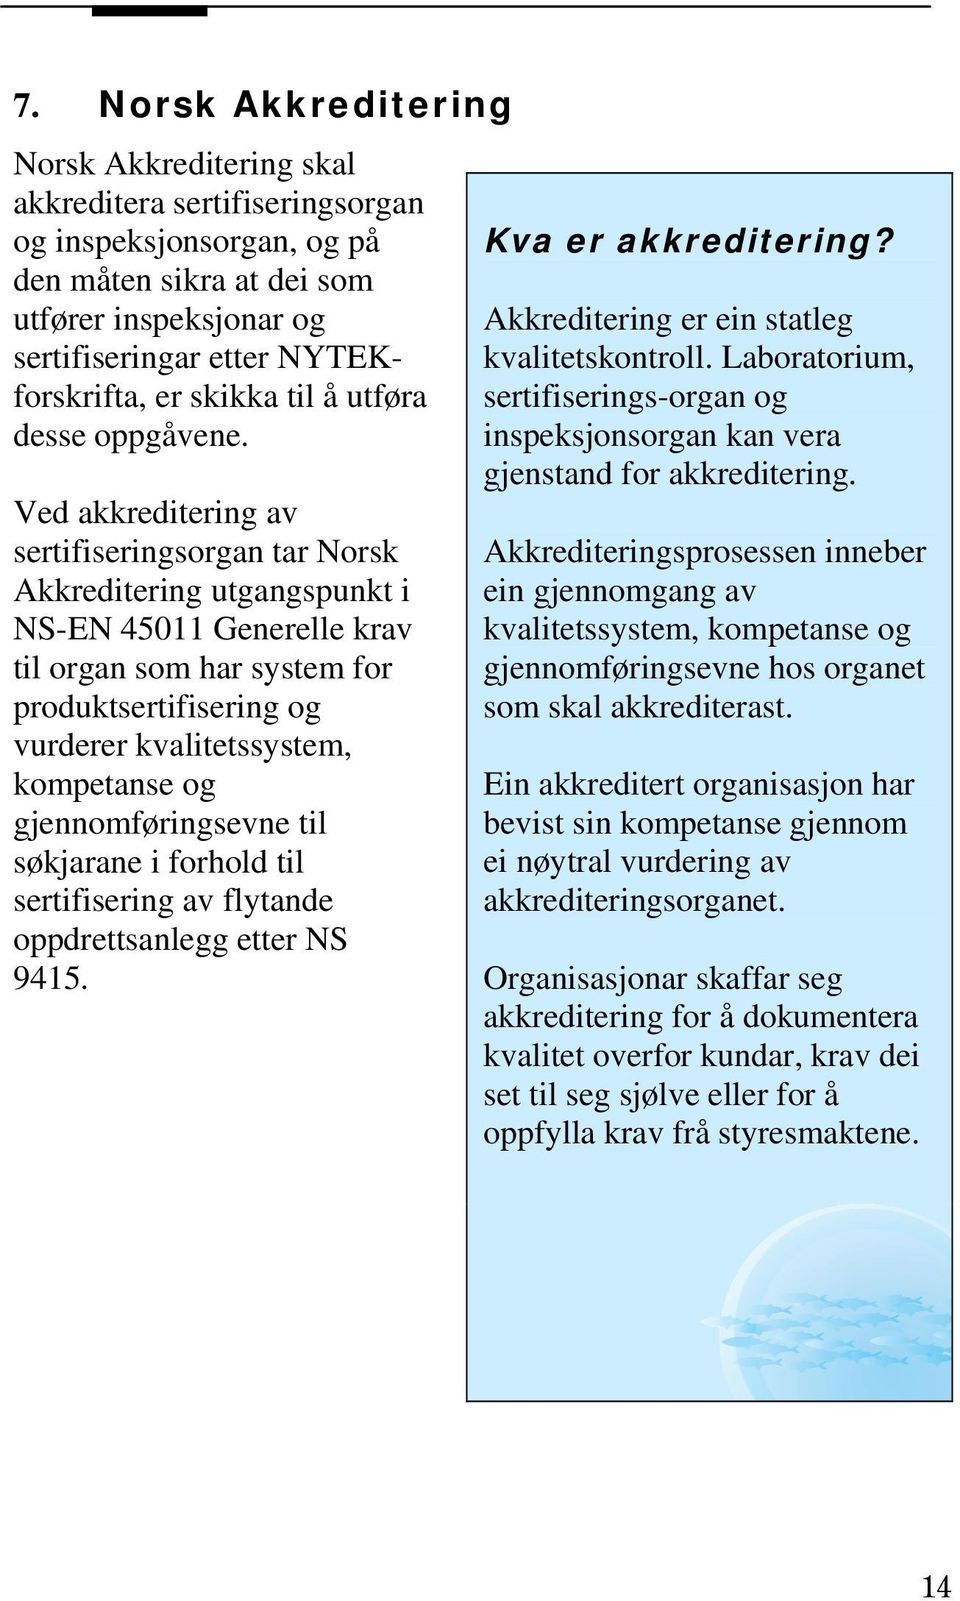 Ved akkreditering av sertifiseringsorgan tar Norsk Akkreditering utgangspunkt i NS-EN 45011 Generelle krav til organ som har system for produktsertifisering og vurderer kvalitetssystem, kompetanse og